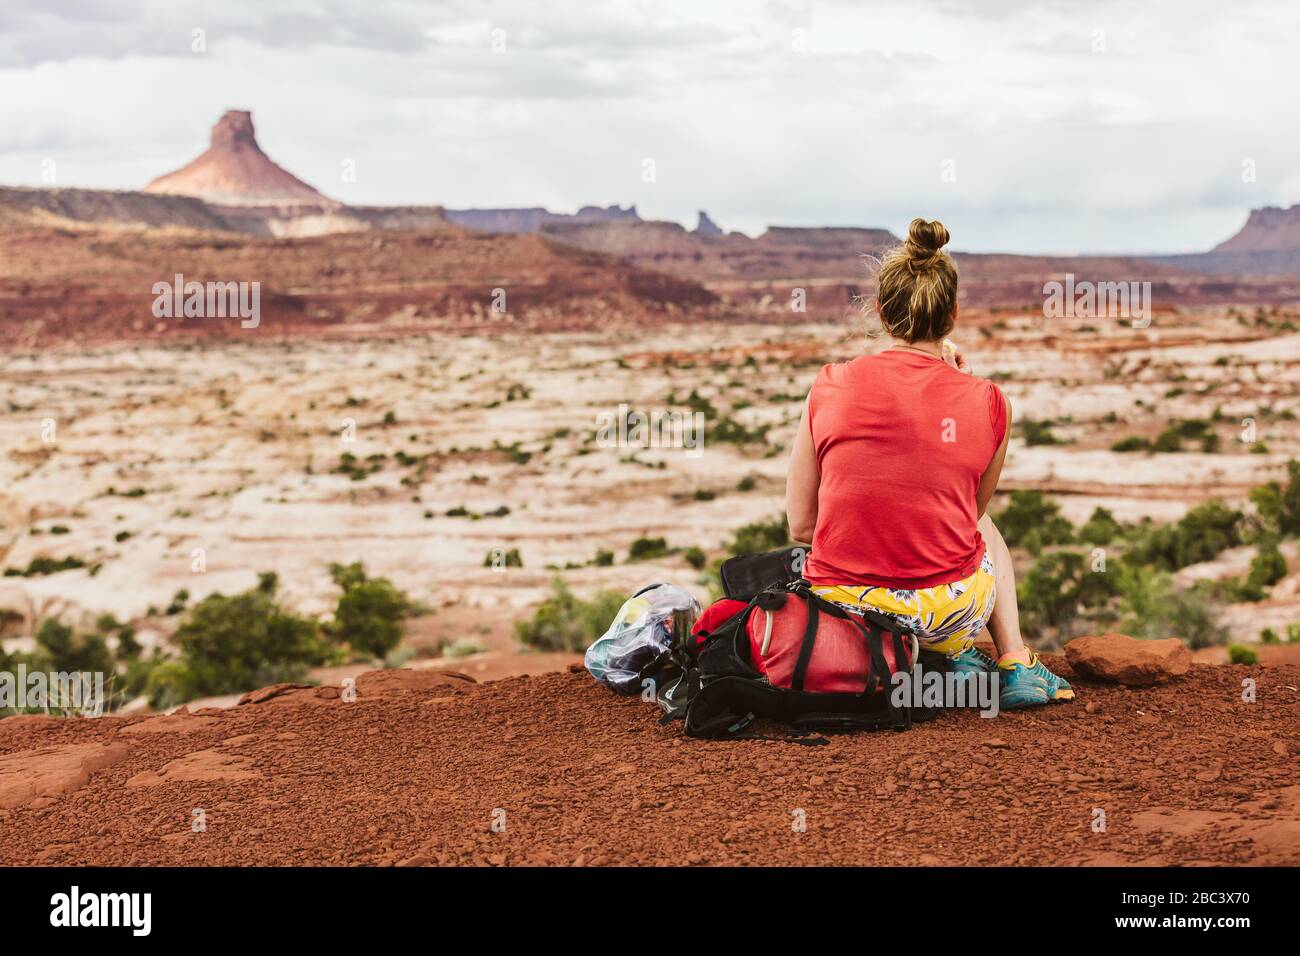 une femme sueur s'assoit sur un sac à dos pendant une randonnée avec vue sur le désert Banque D'Images